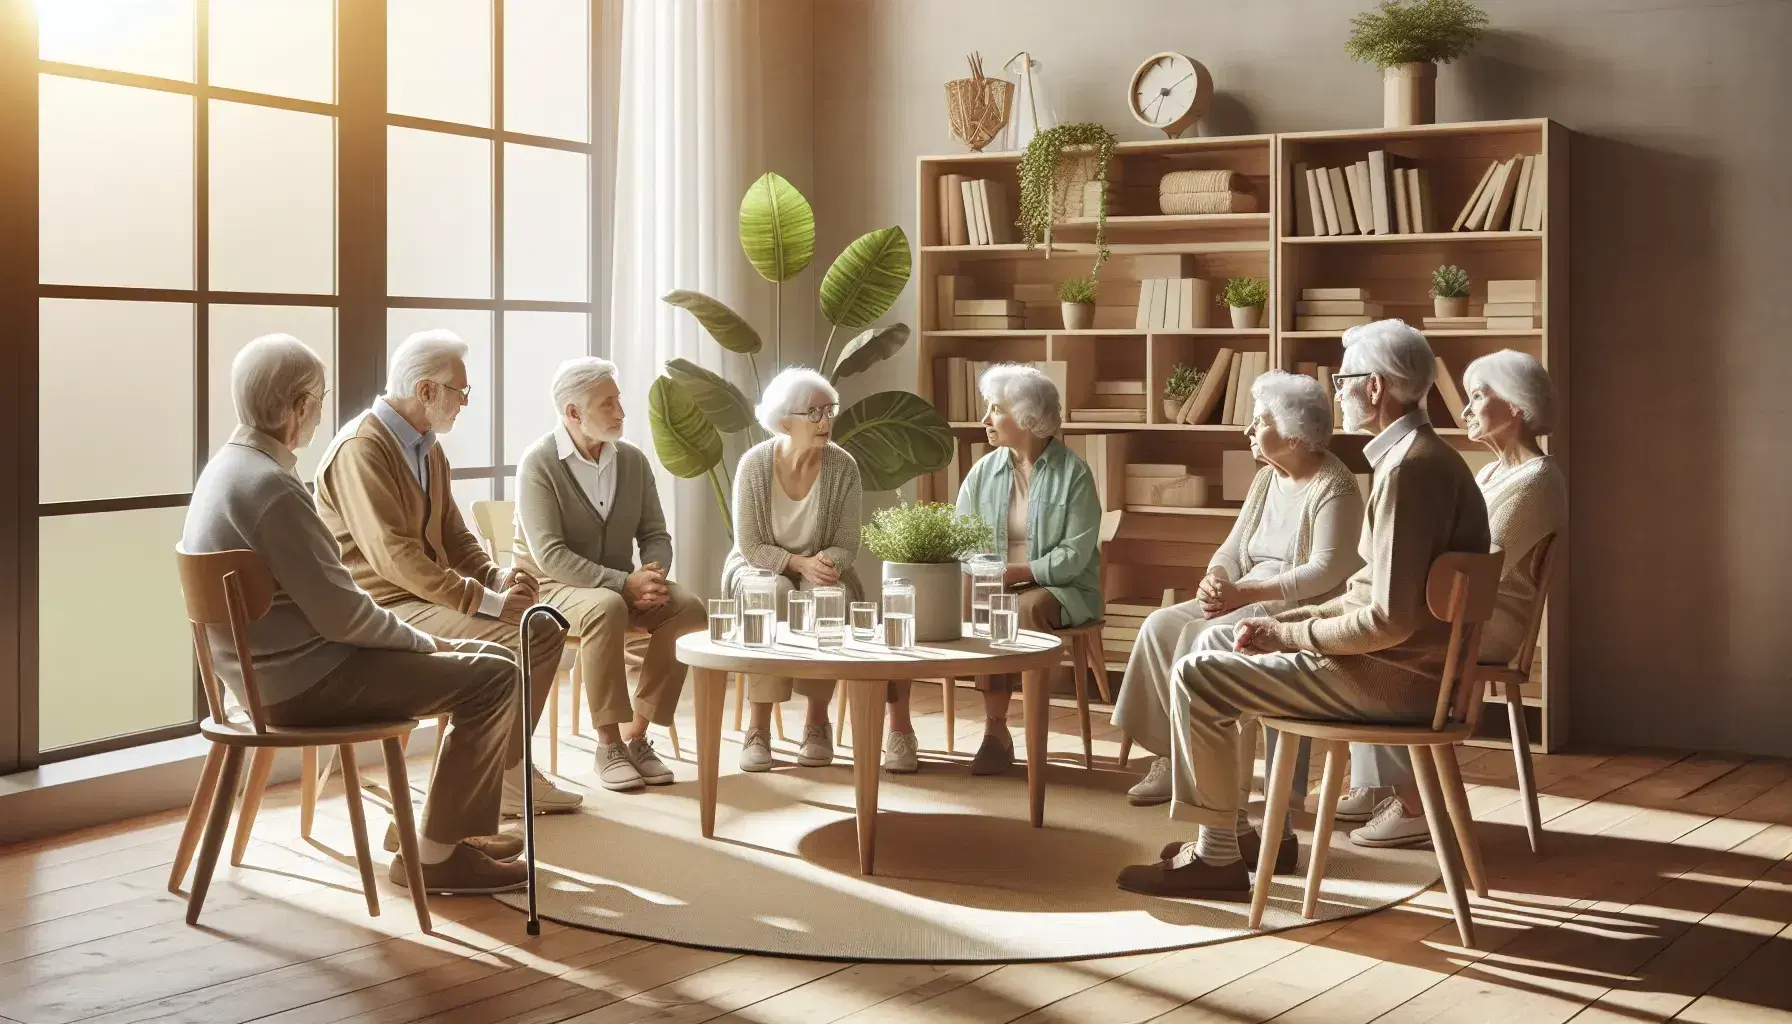 Grupo de personas mayores sentadas en semicírculo en un ambiente acogedor con luz natural, conversando y rodeados de plantas y libros.